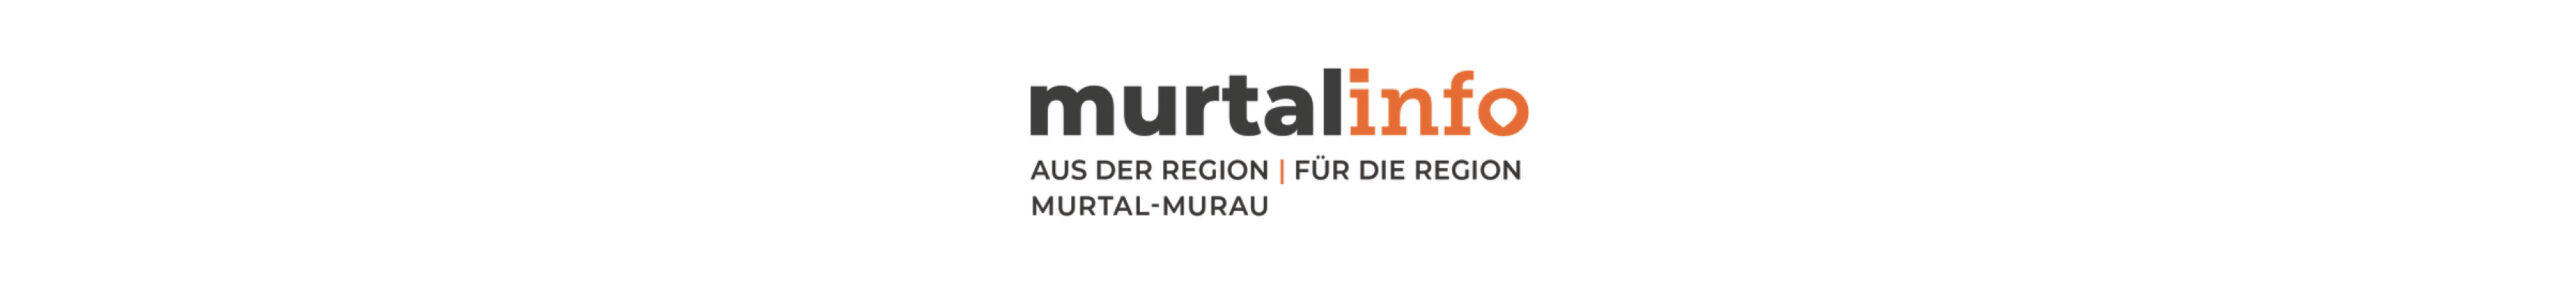 murtalinfo-banner